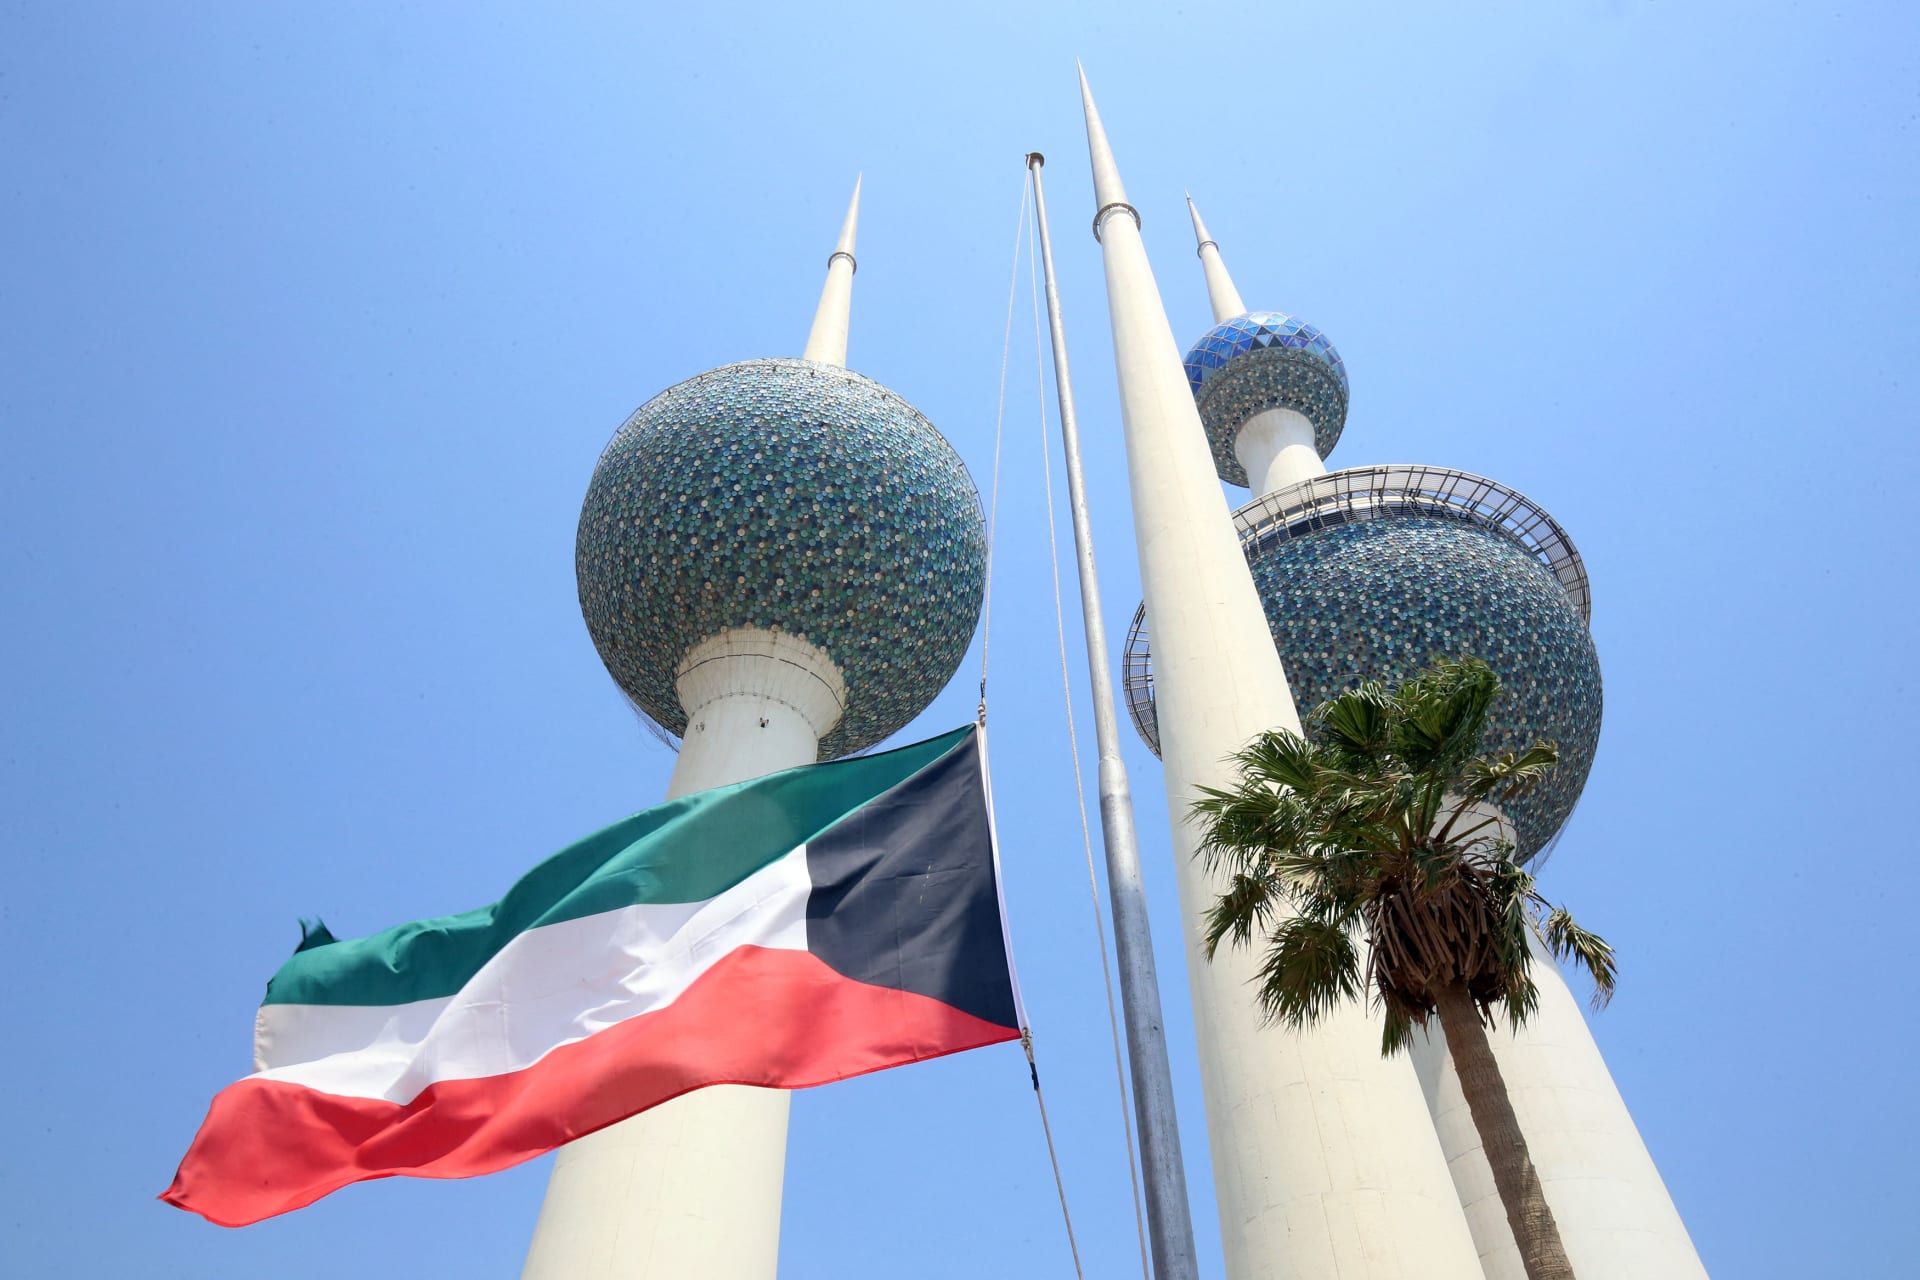 الكويت تعلن تعرض مقر سكن رئيس المكتب العسكري بسفارتها في الخرطوم لـ"الاقتحام والتخريب"